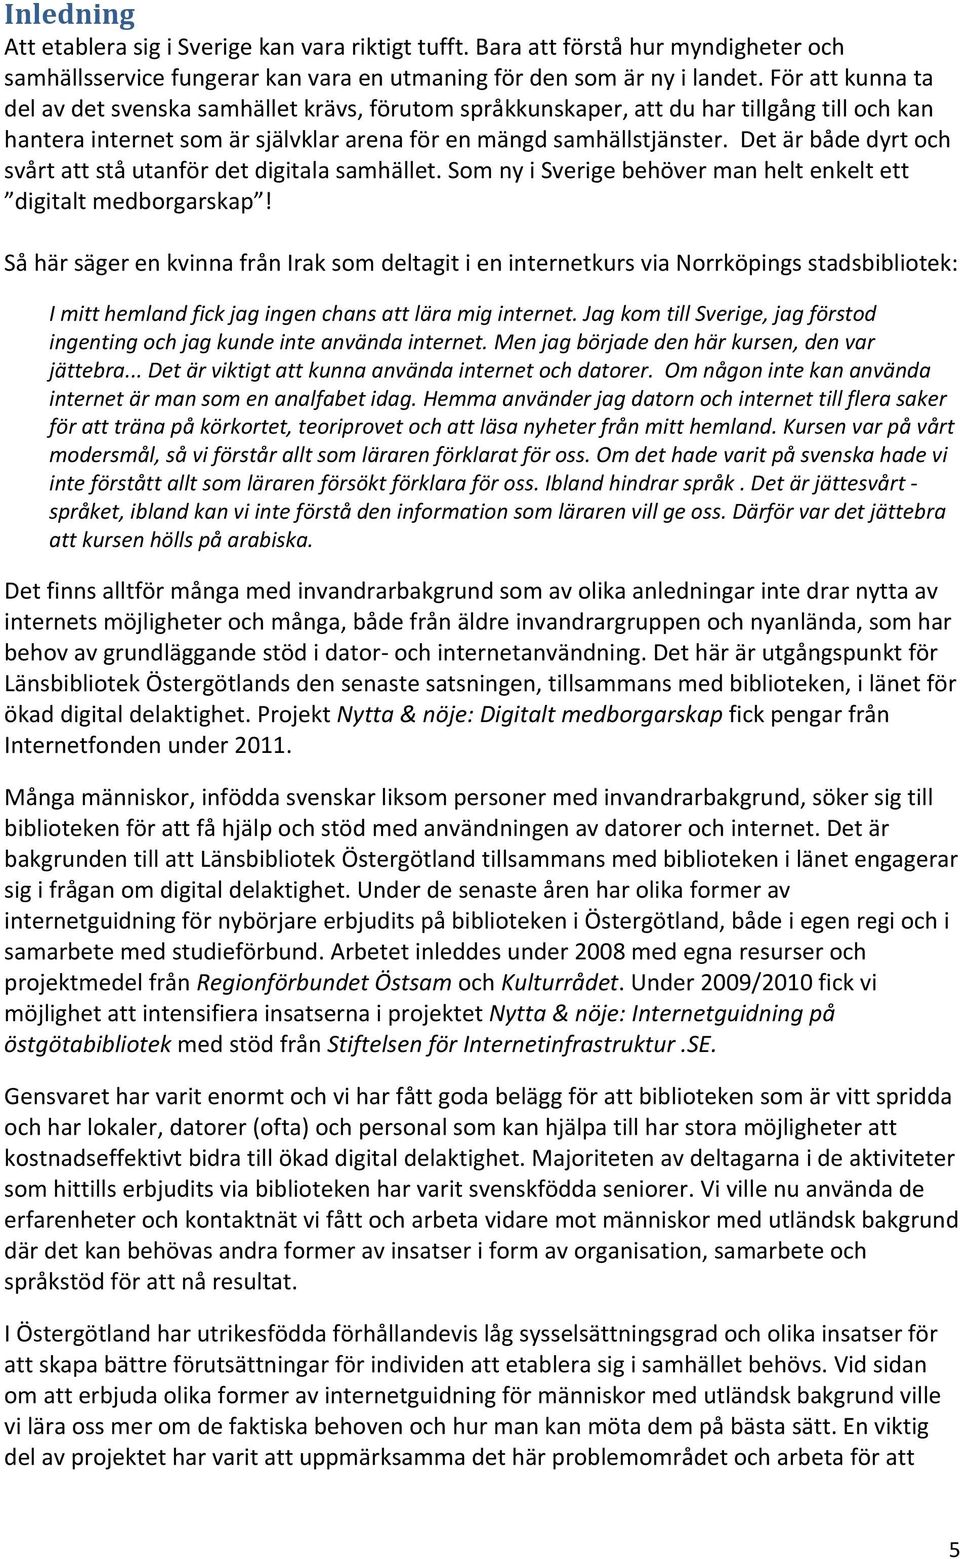 Det är både dyrt och svårt att stå utanför det digitala samhället. Som ny i Sverige behöver man helt enkelt ett digitalt medborgarskap!